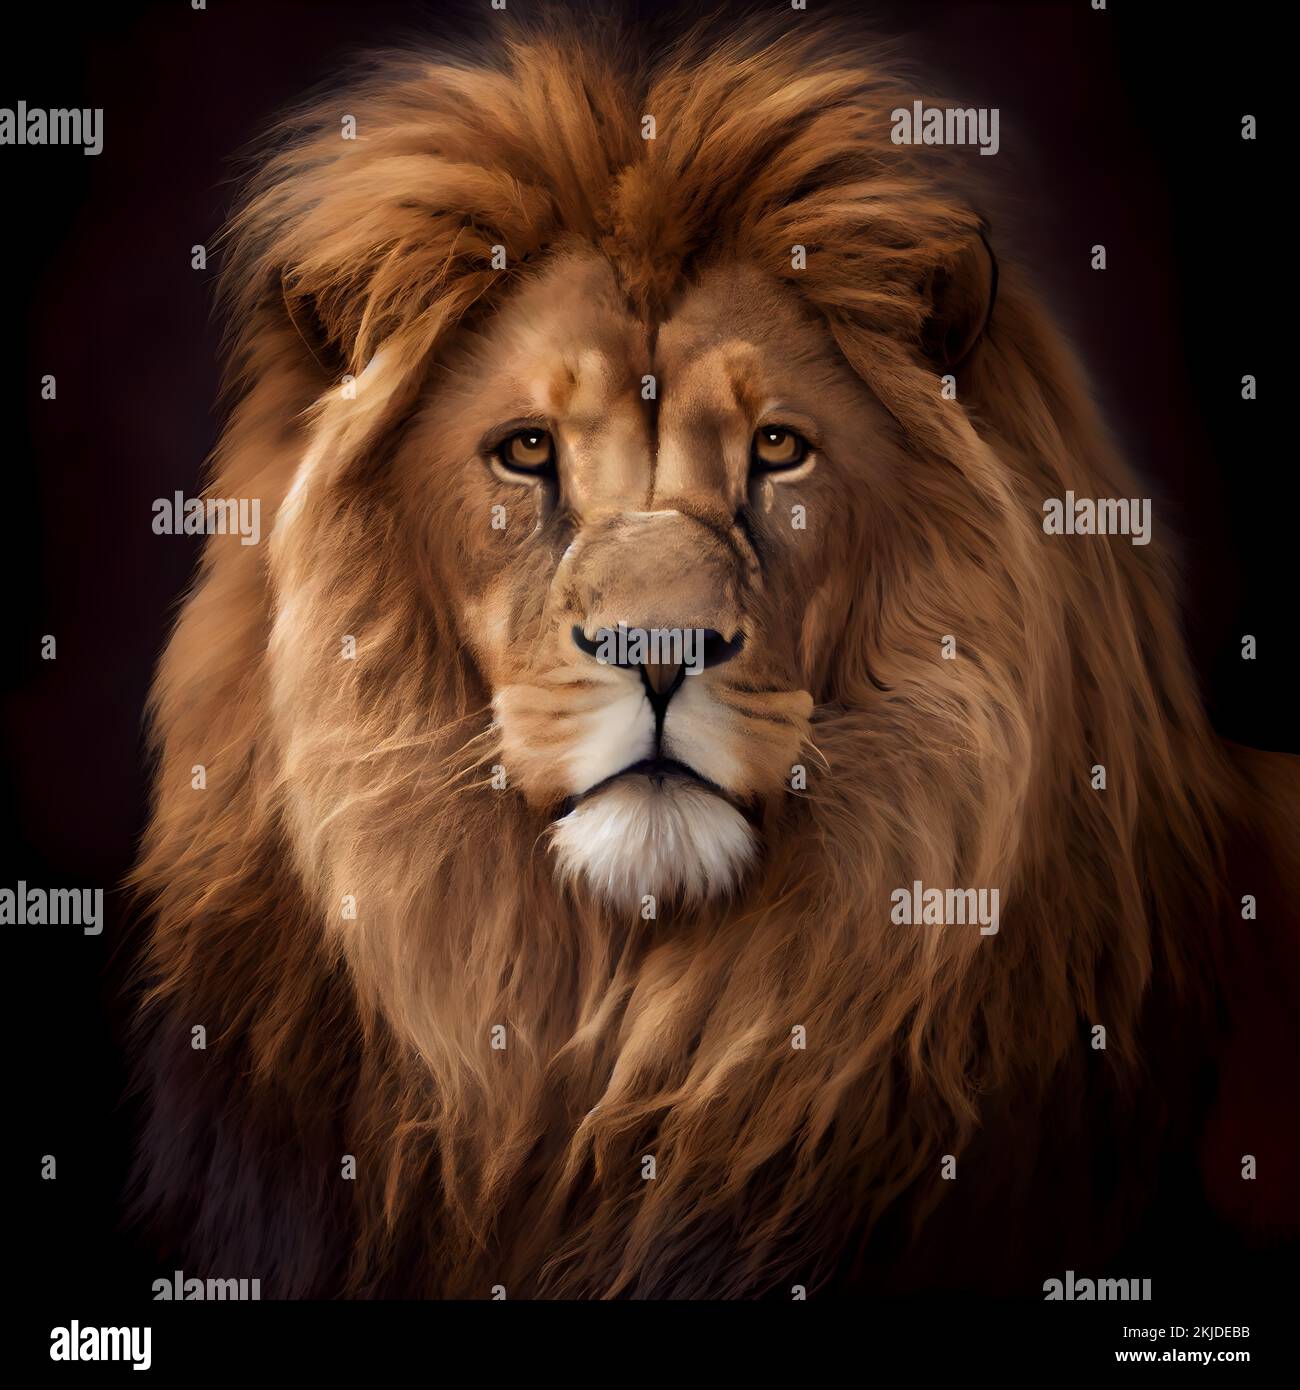 Illustration réaliste d'un lion en format portrait, détails exquis. Arrière-plan noir. 3d rendu. Banque D'Images